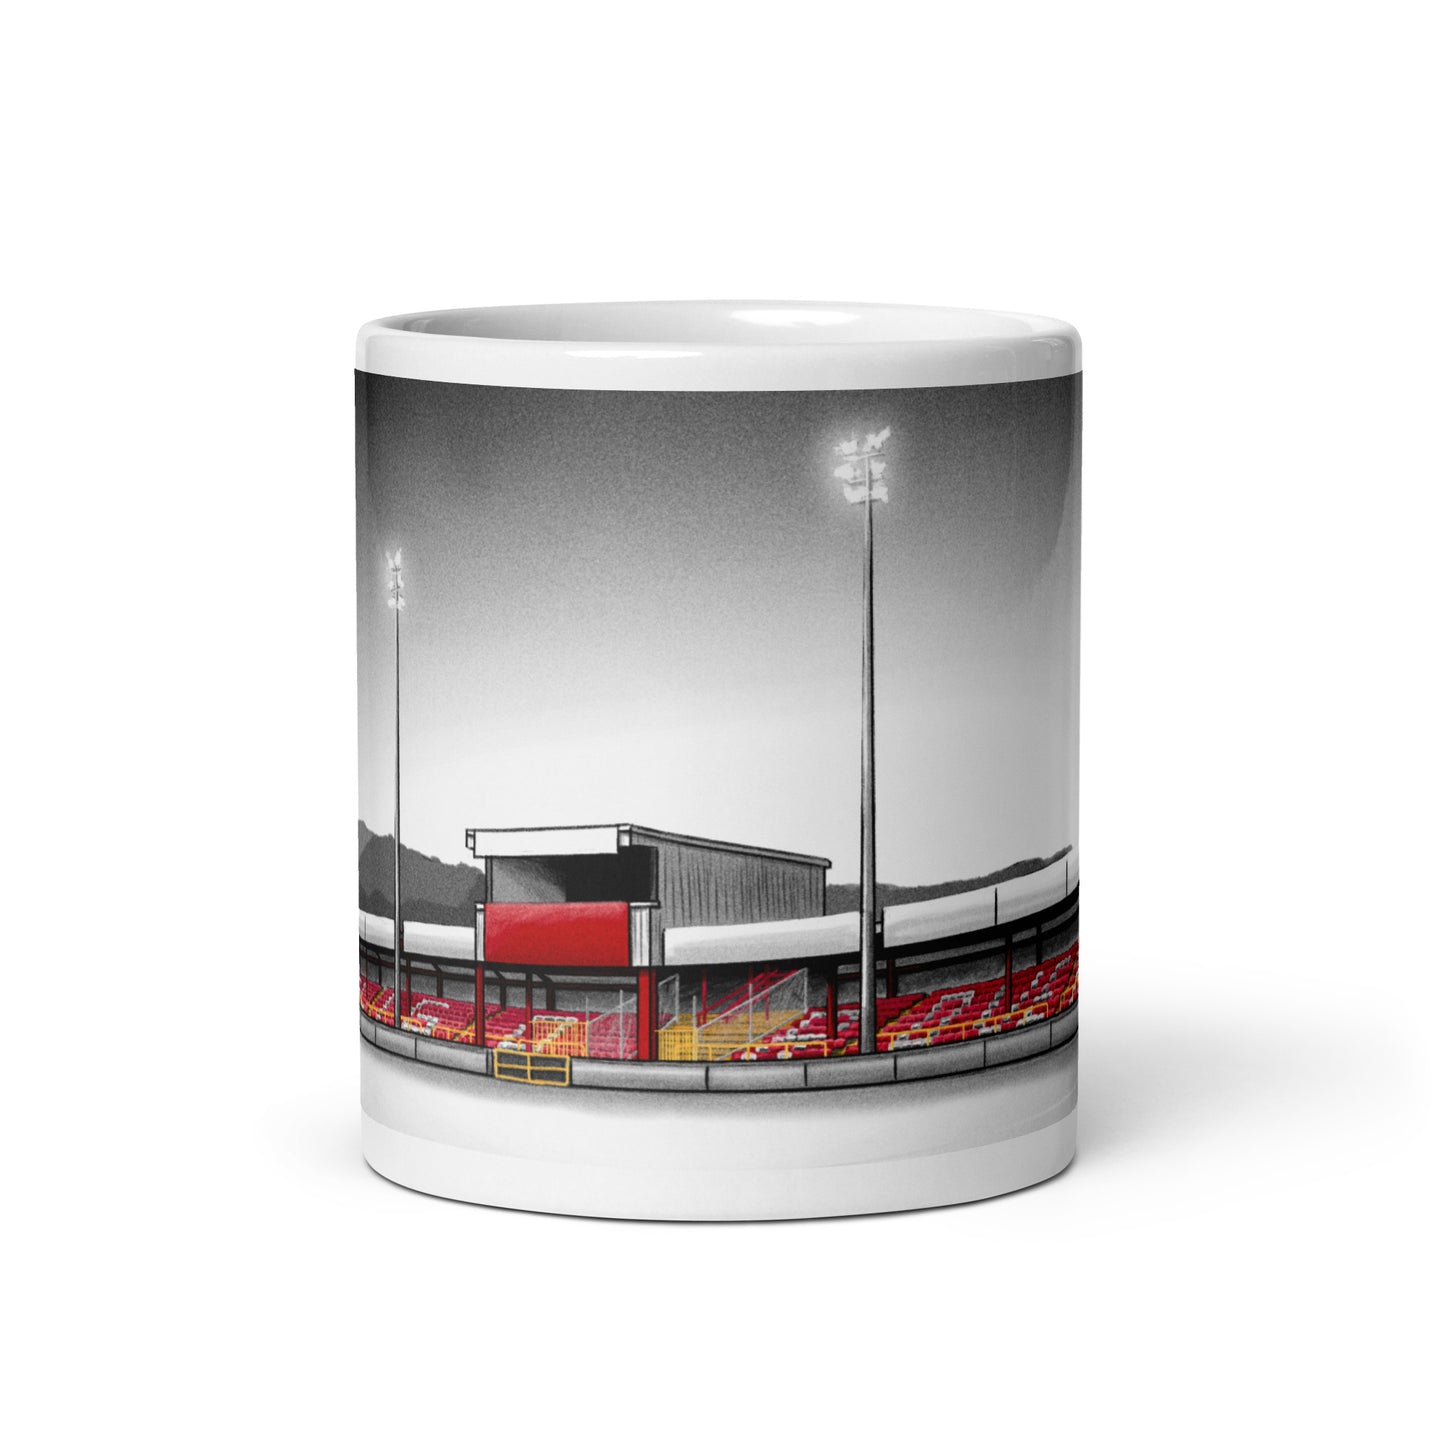 The Showgrounds Sligo Rovers glossy mug